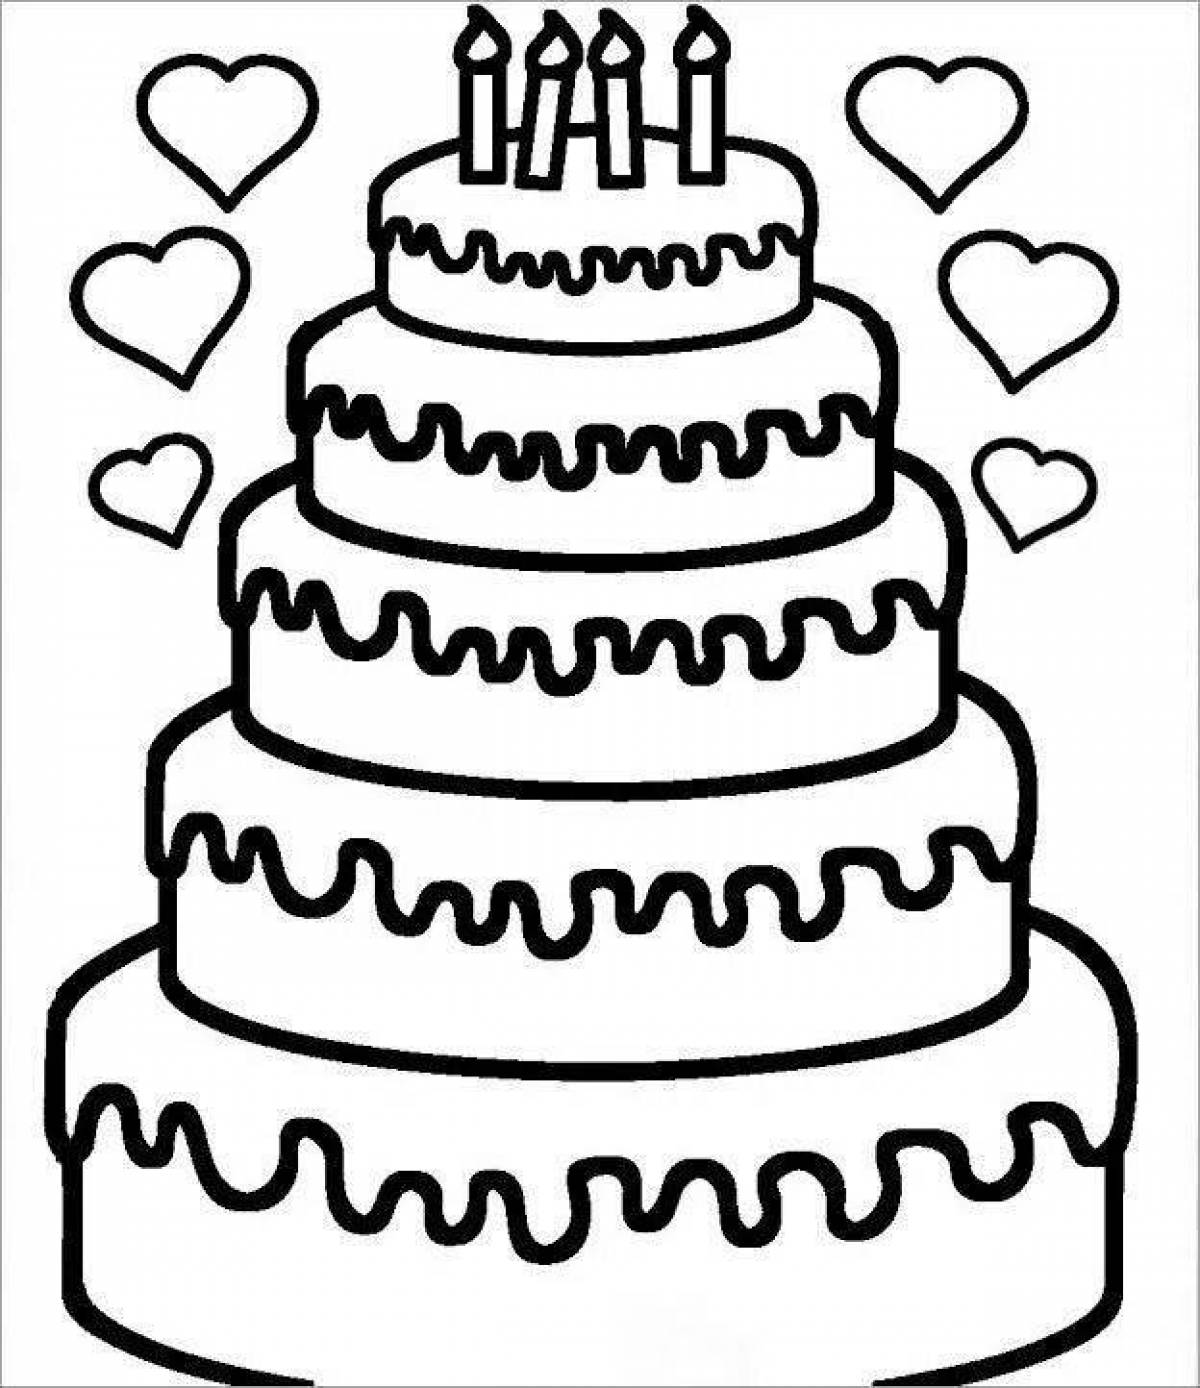 Распечатать картинку на торт. Раскраска торт. Раскраска торт на день рождения. Раскраска торт для детей 3-4 лет. Раскраска большой торт.